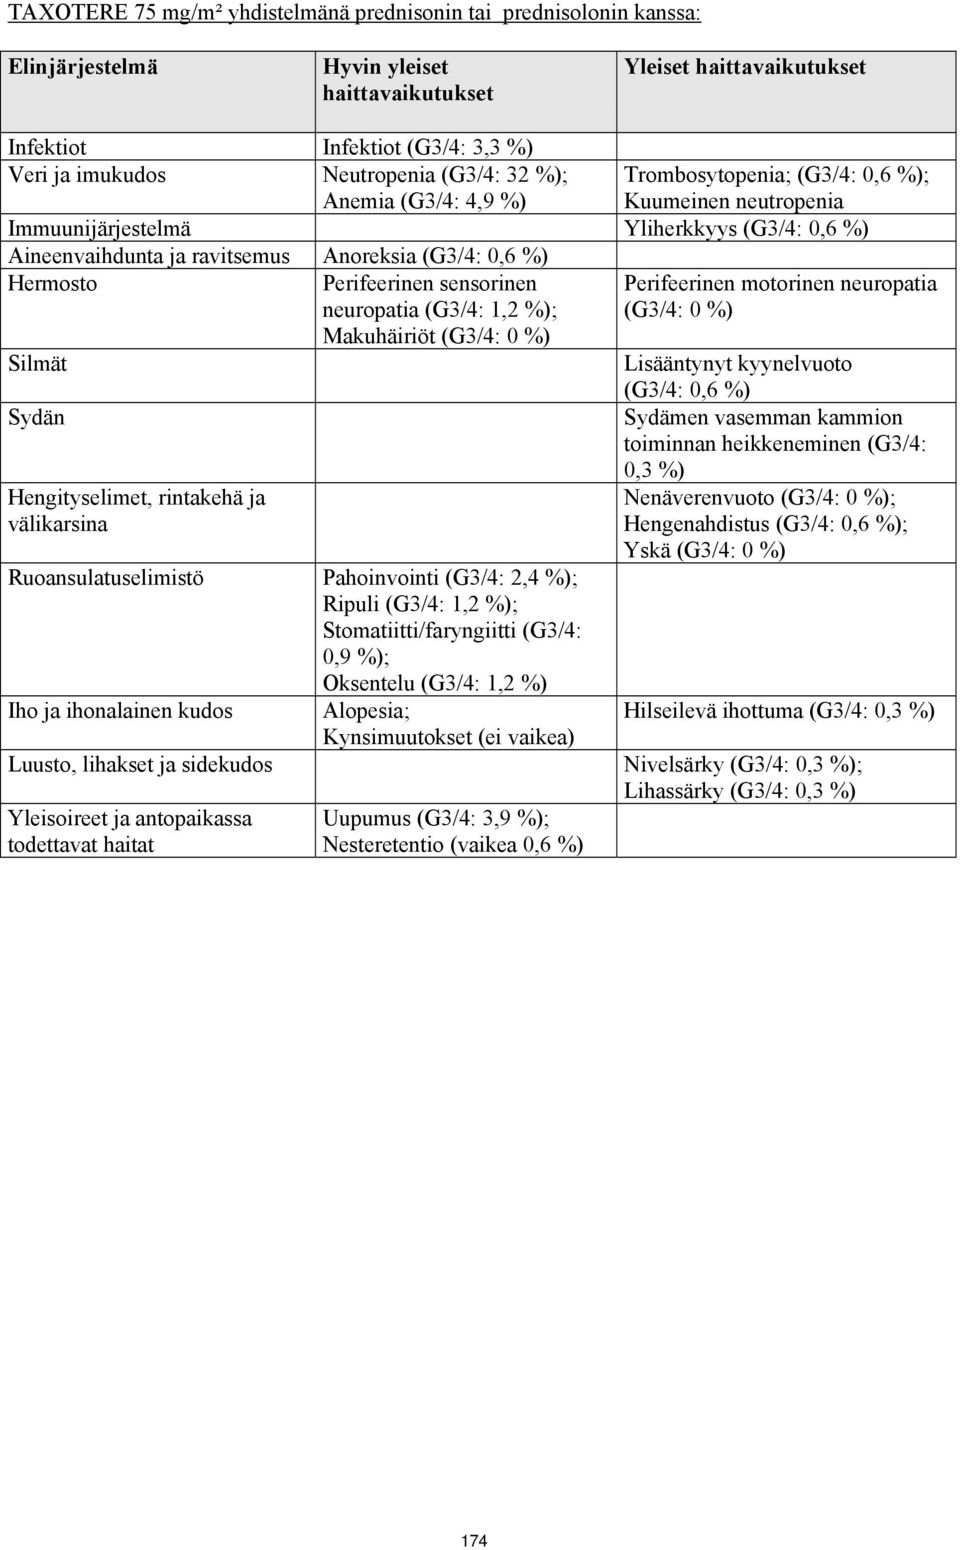 neuropatia (G3/4: 1,2 %); Makuhäiriöt (G3/4: 0 %) Silmät Sydän Hengityselimet, rintakehä ja välikarsina Ruoansulatuselimistö Pahoinvointi (G3/4: 2,4 %); Ripuli (G3/4: 1,2 %); Stomatiitti/faryngiitti